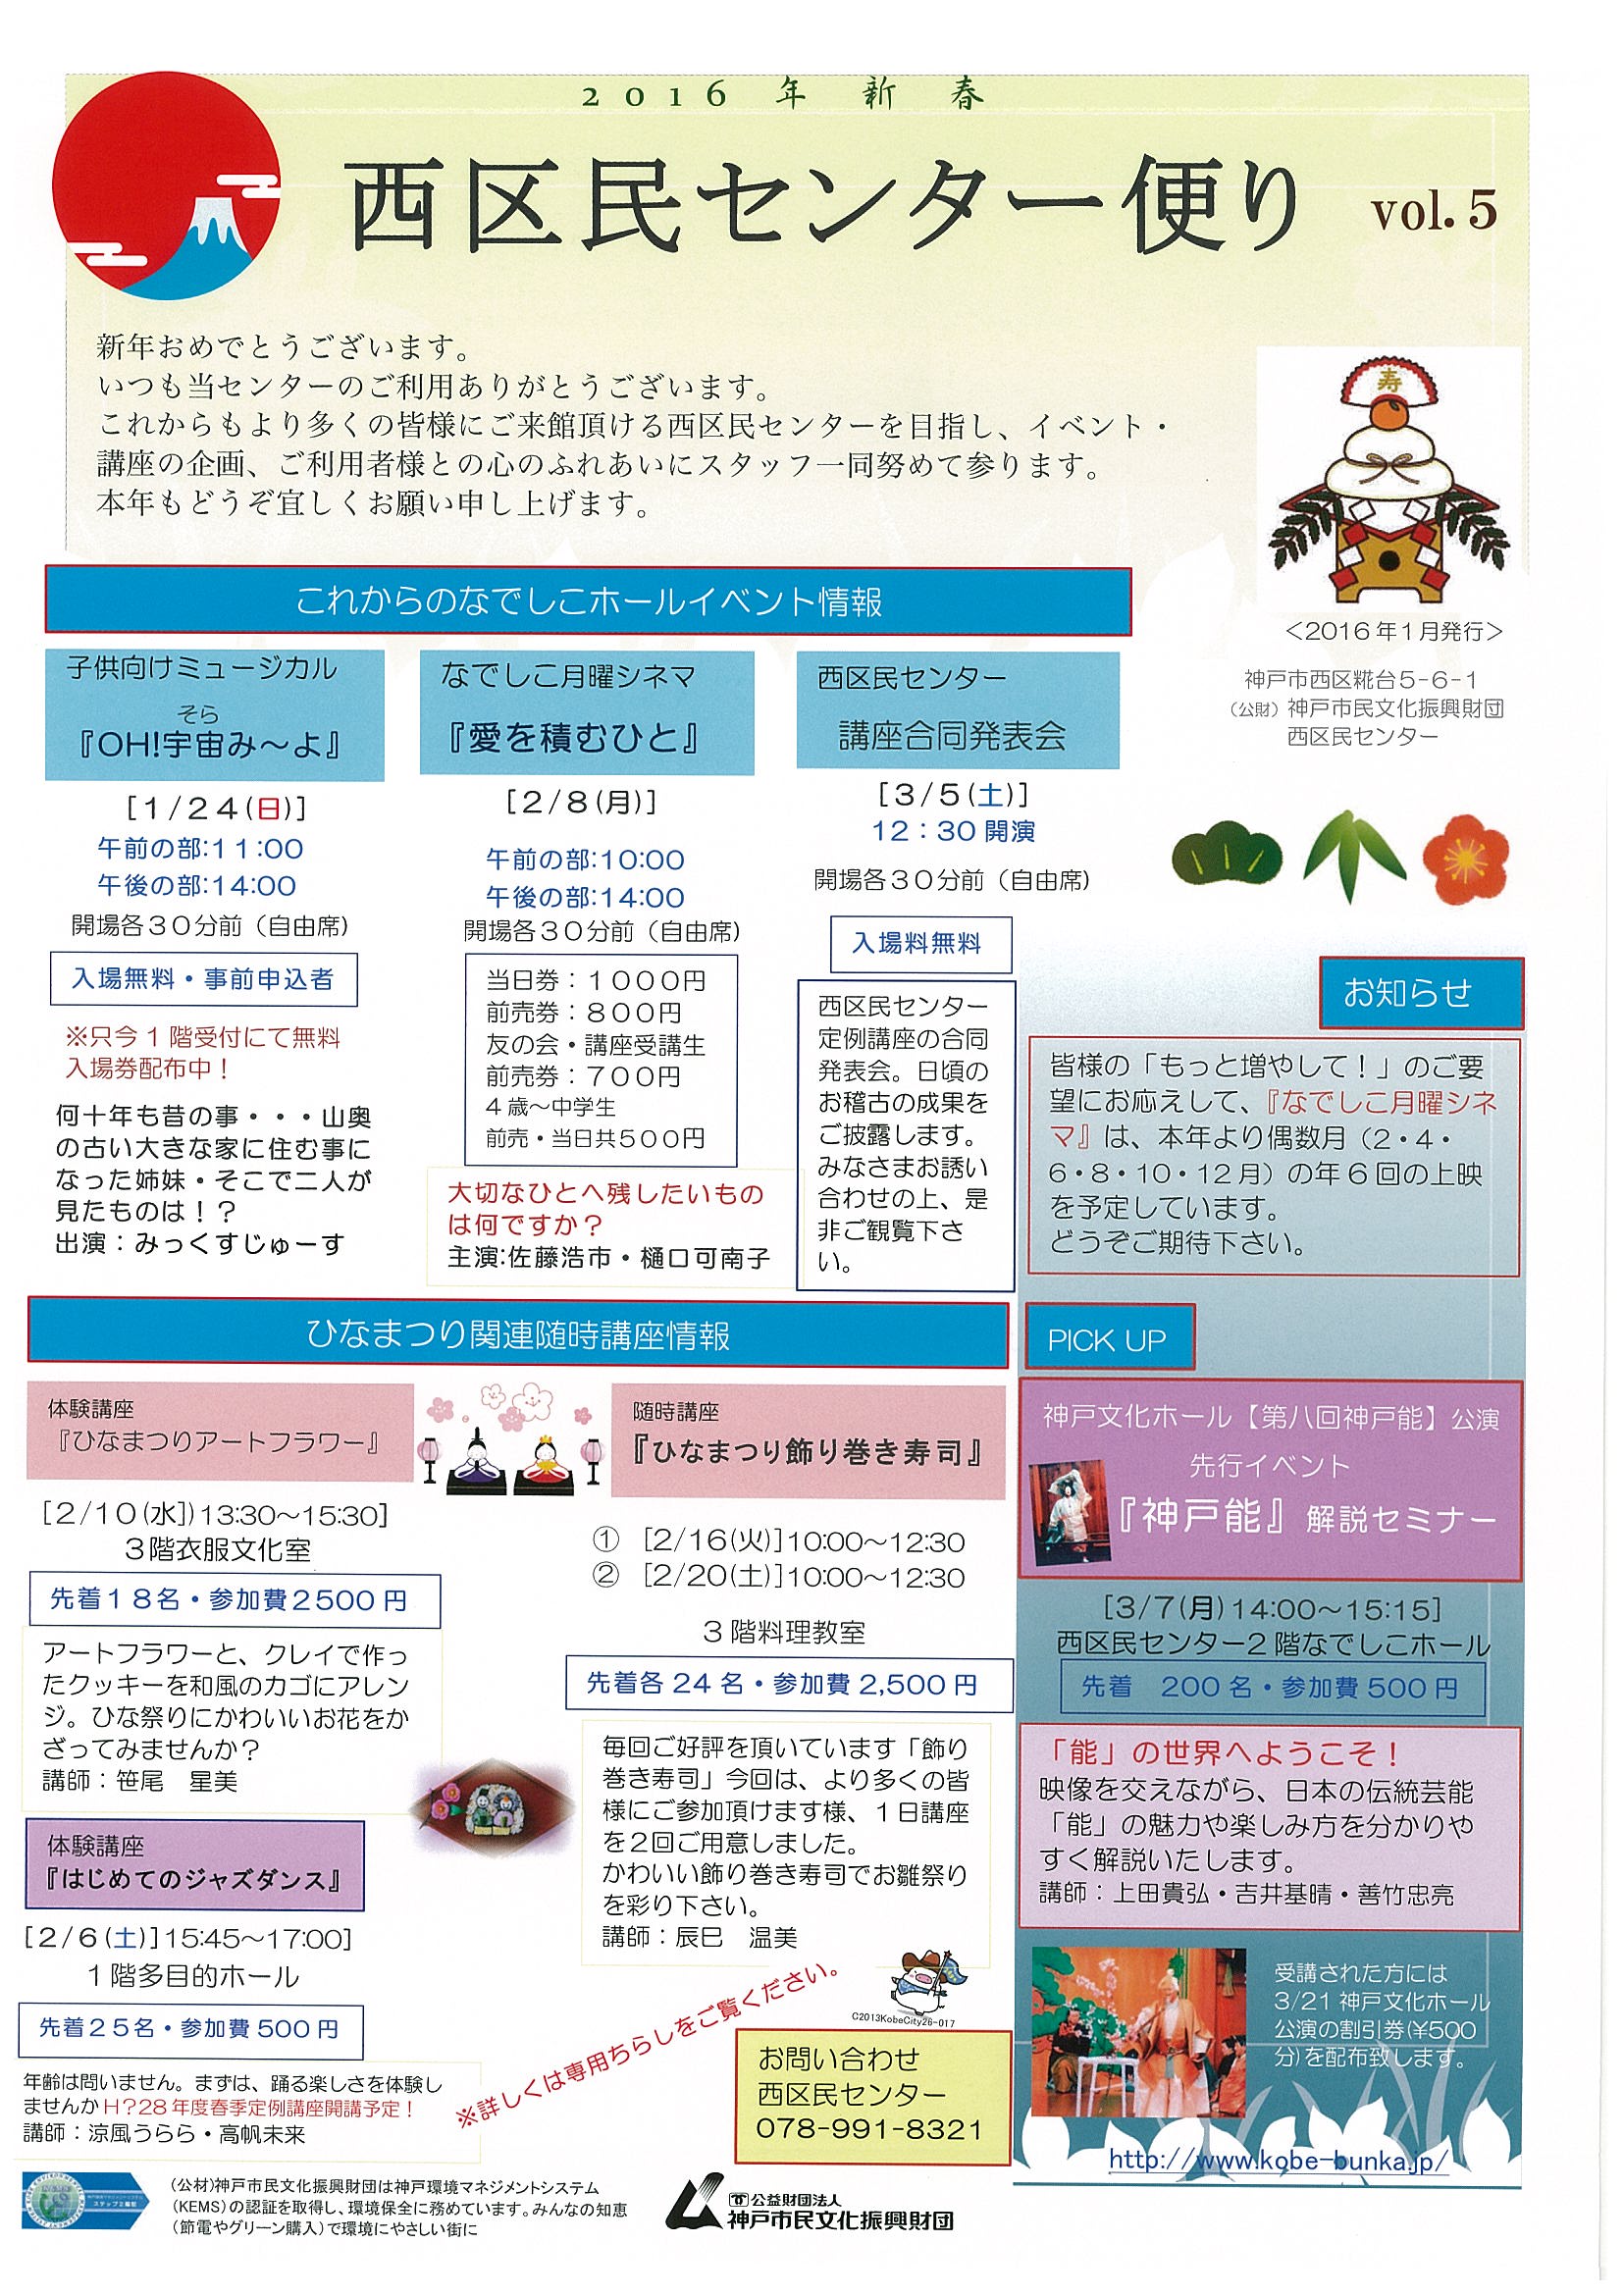 公演情報一覧 27ページ目 43ページ中 公益財団法人 神戸市民文化振興財団